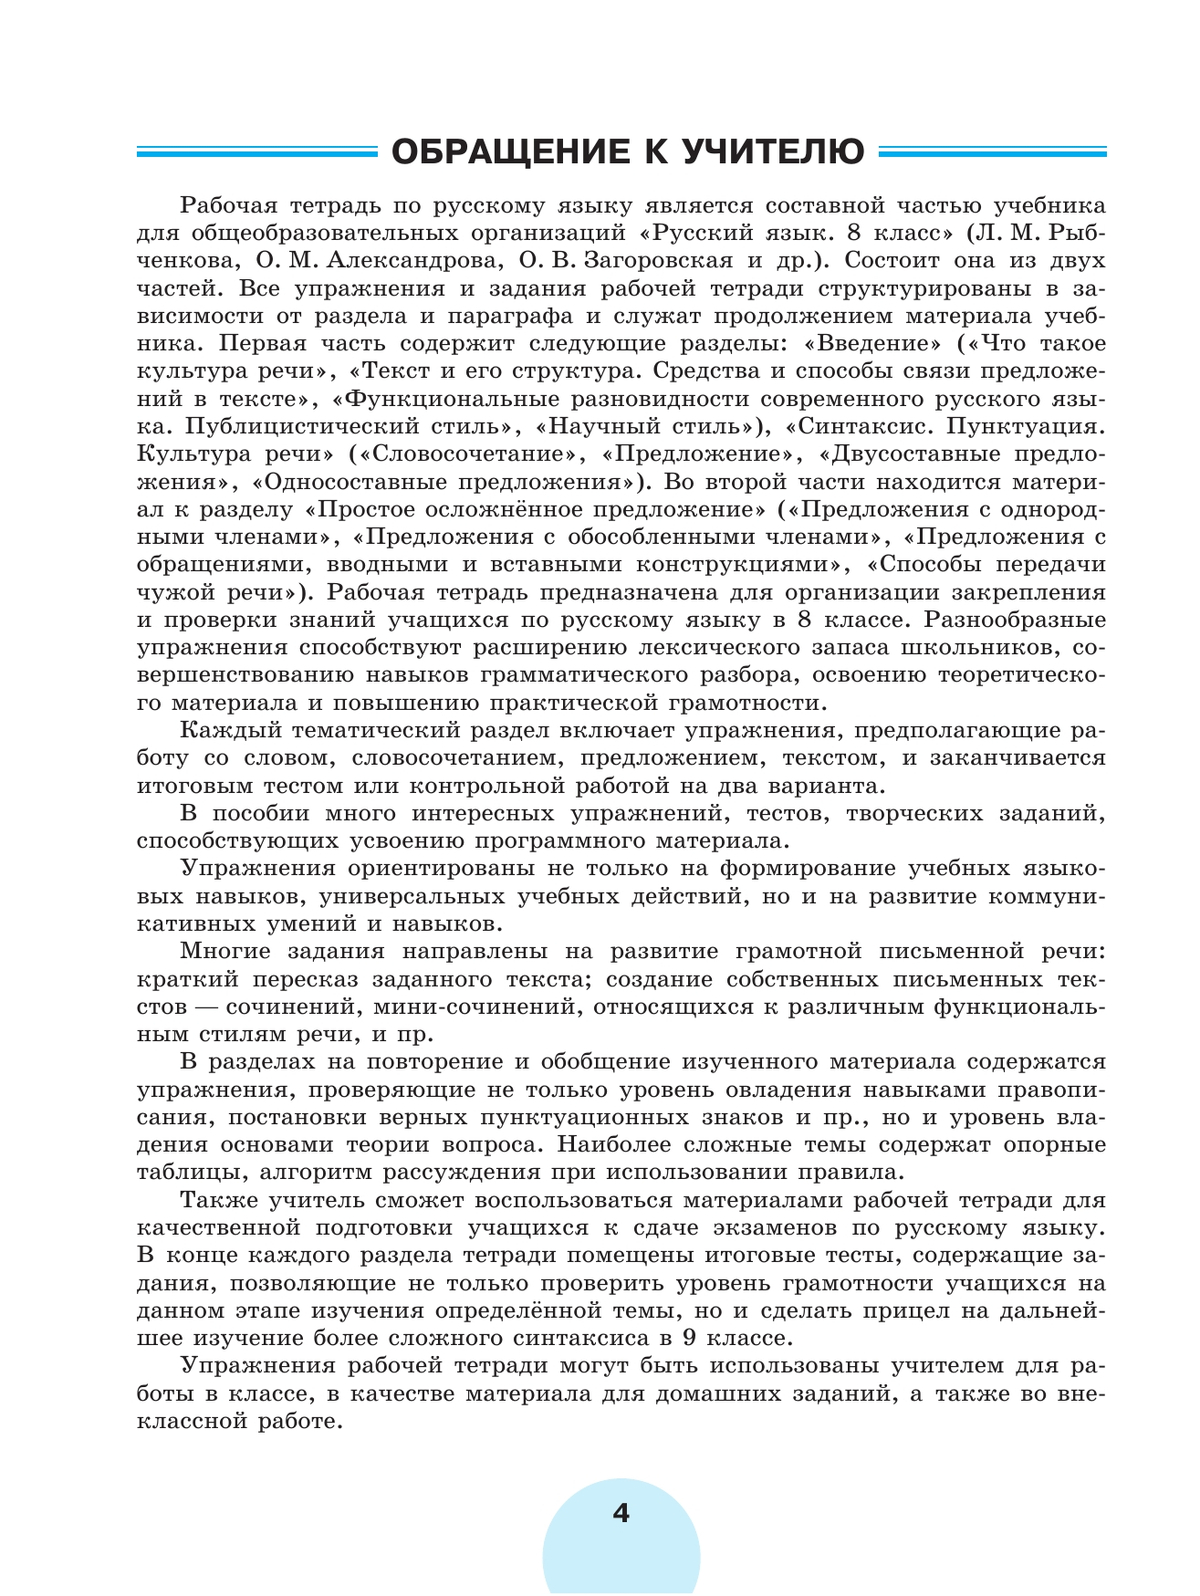 Русский язык. Рабочая тетрадь. 8 класс. В 2 ч. Часть 2 6